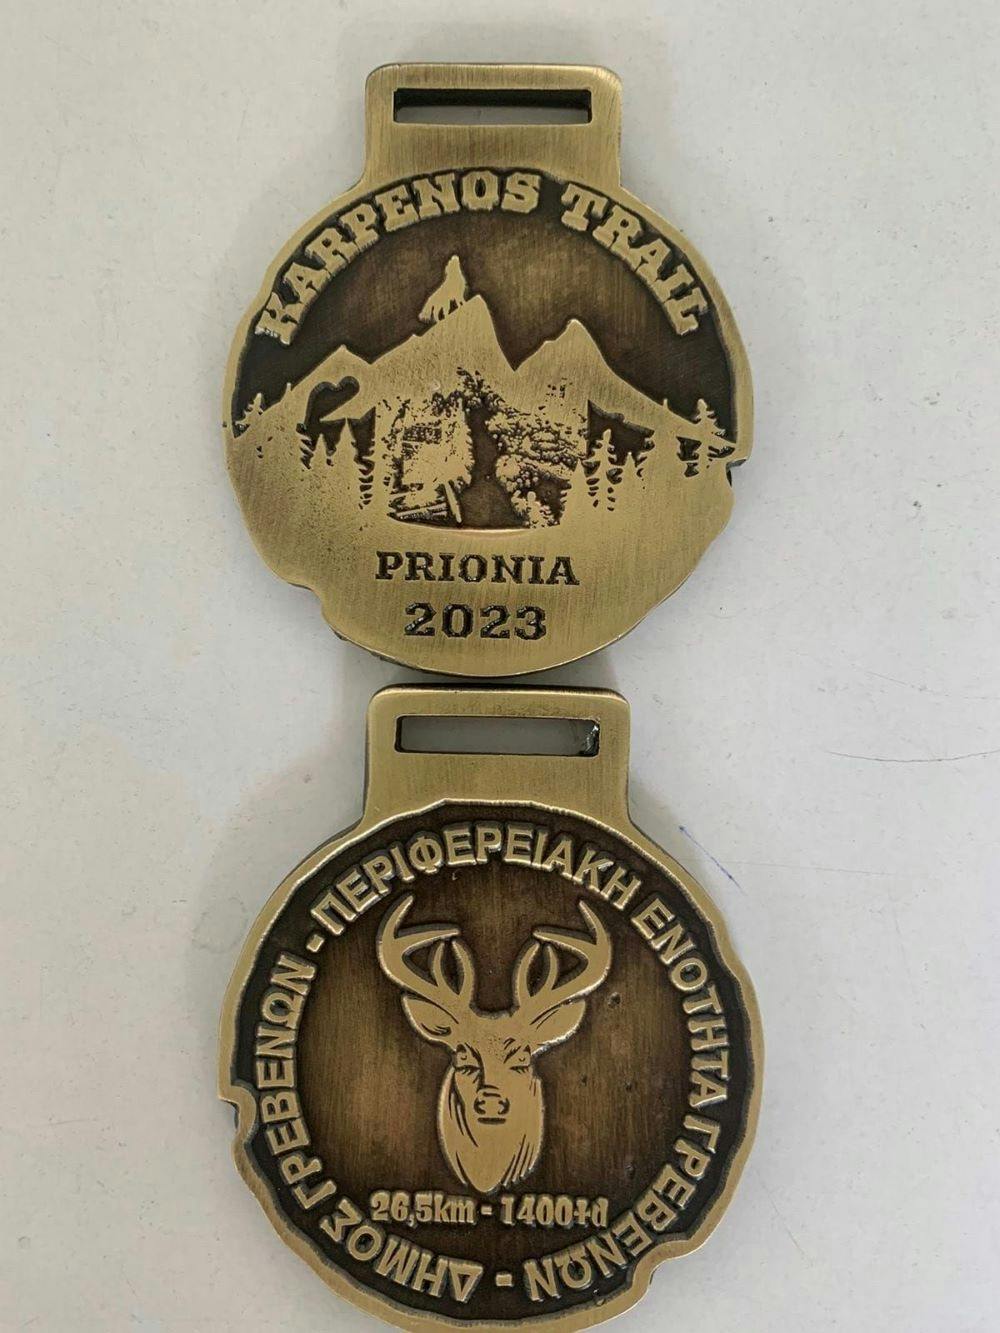 Αποκαλύφθηκε το μετάλλιο του Karpenos Trail runbeat.gr 